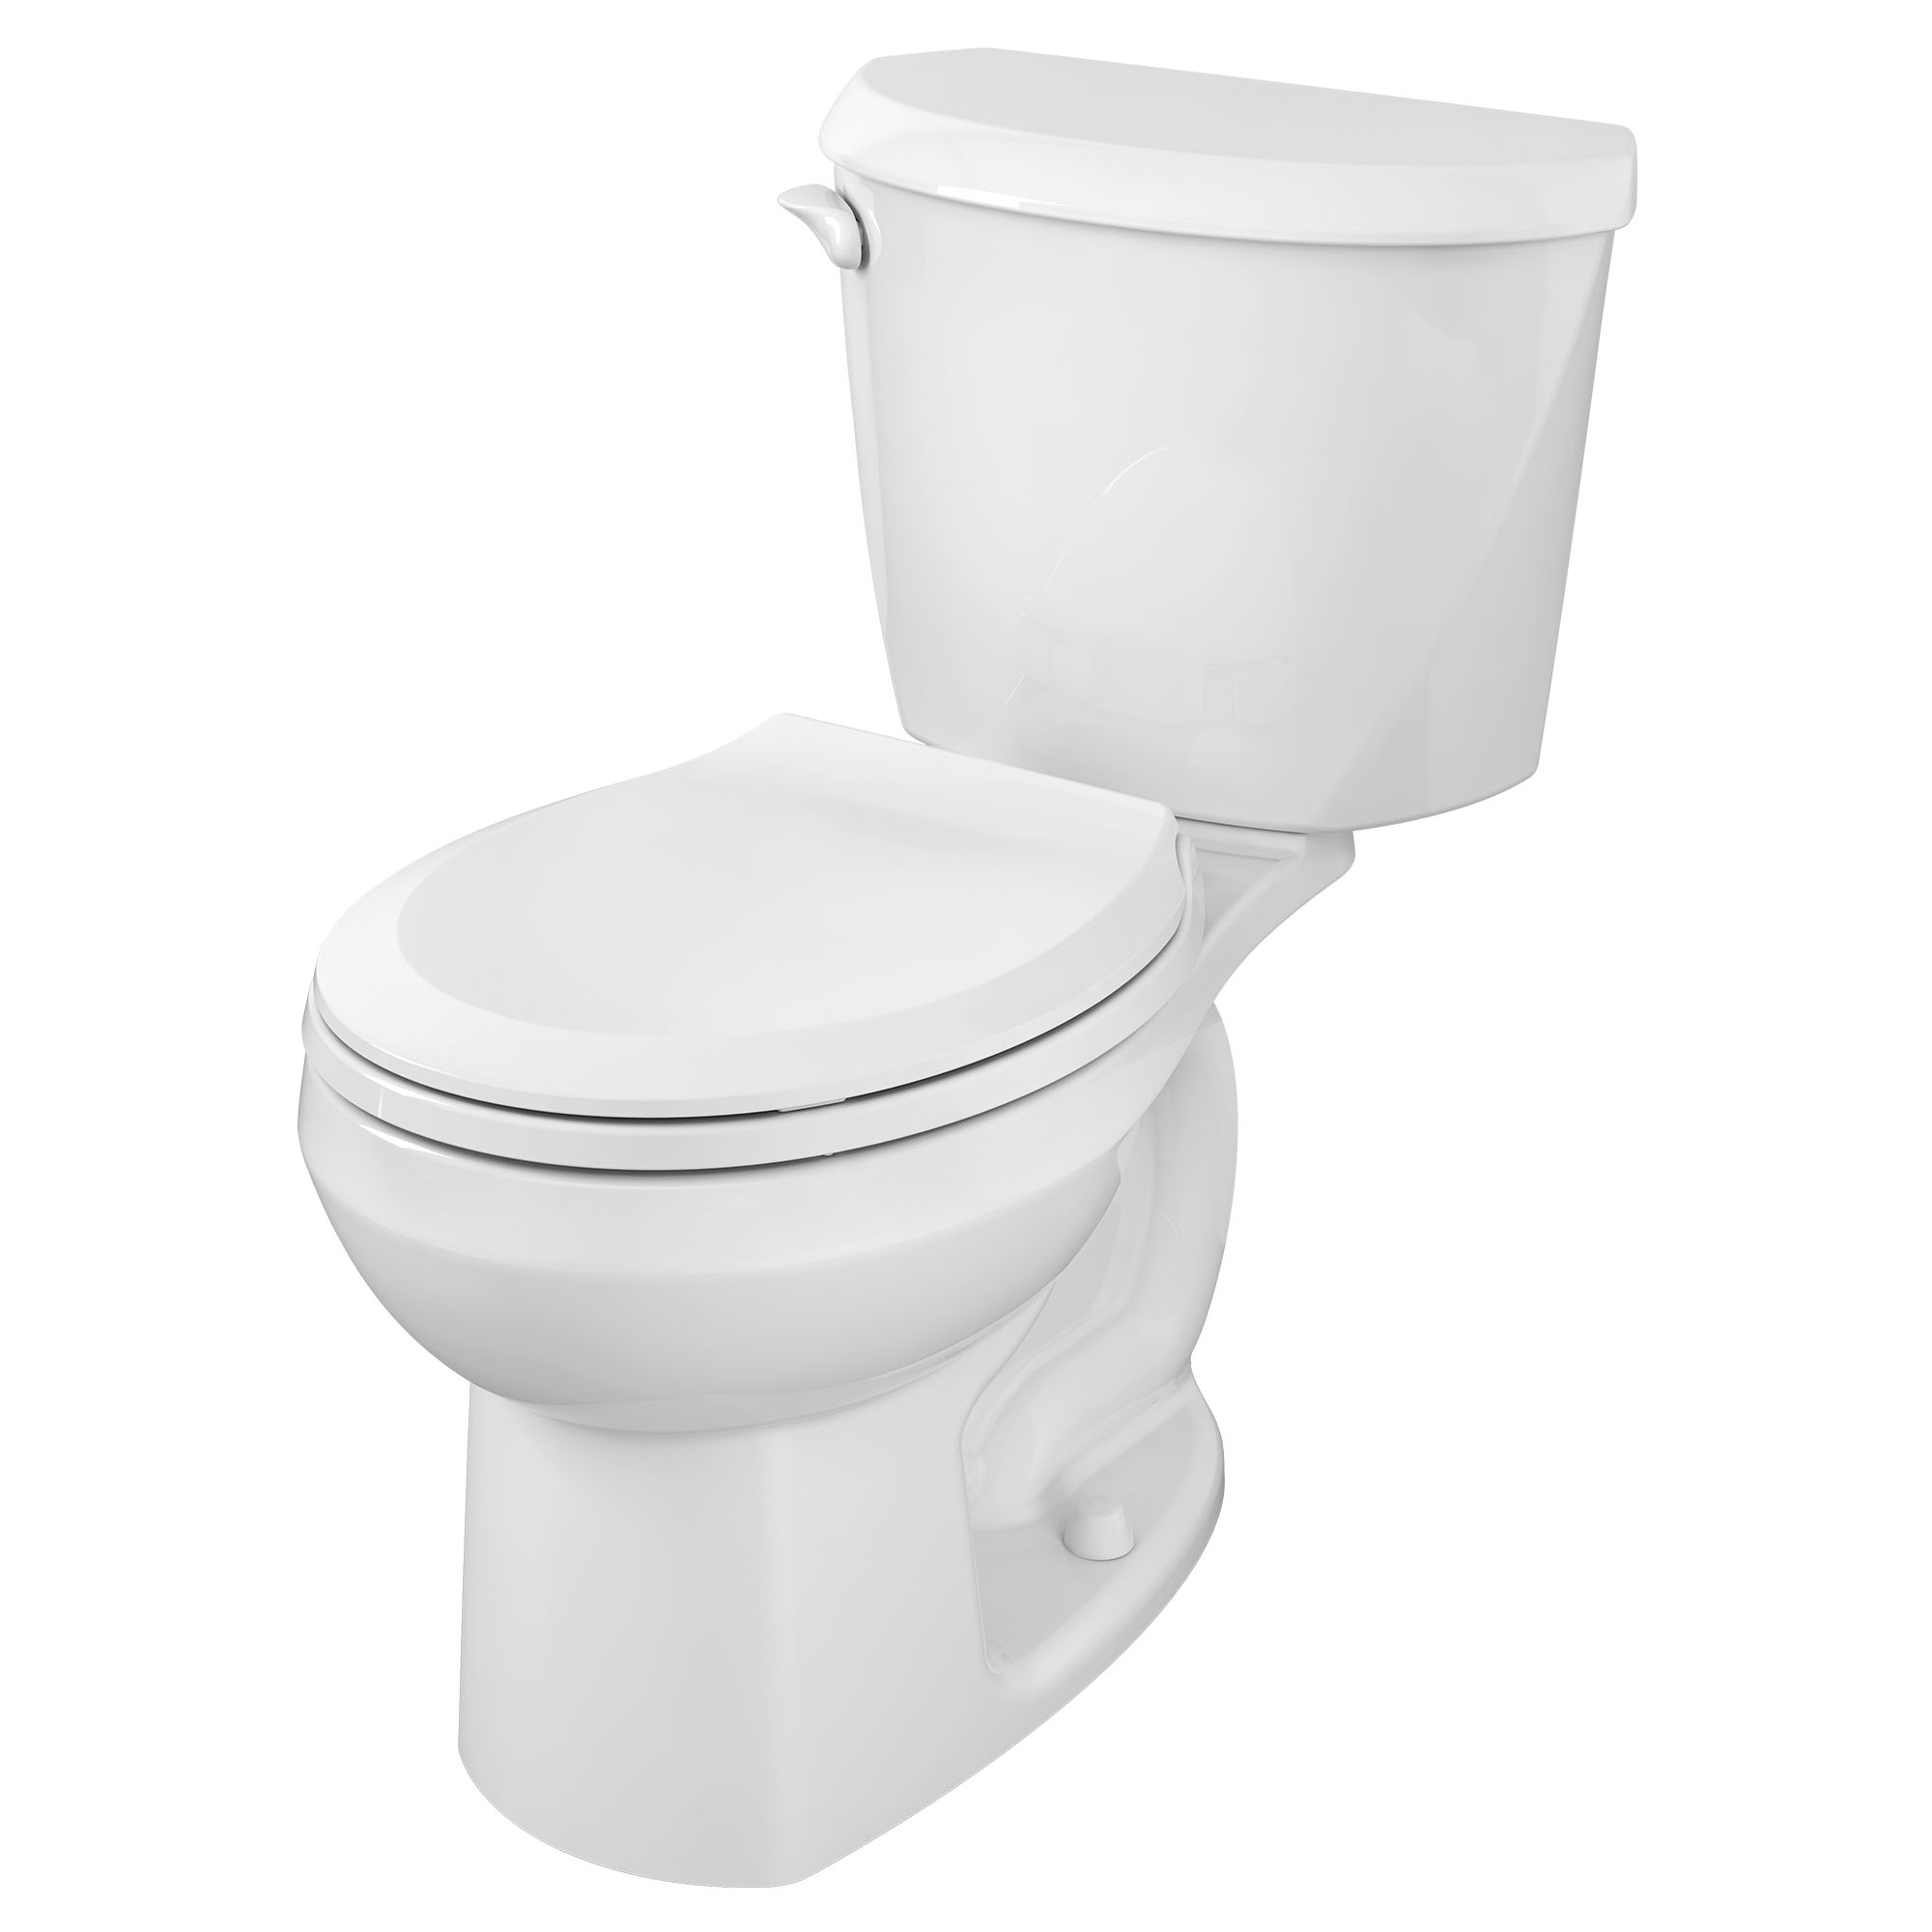 Toilette Colony, 2 pièces, 1,6 gpc/6,0 lpc, à cuvette au devant rond à hauteur régulière, sans siège